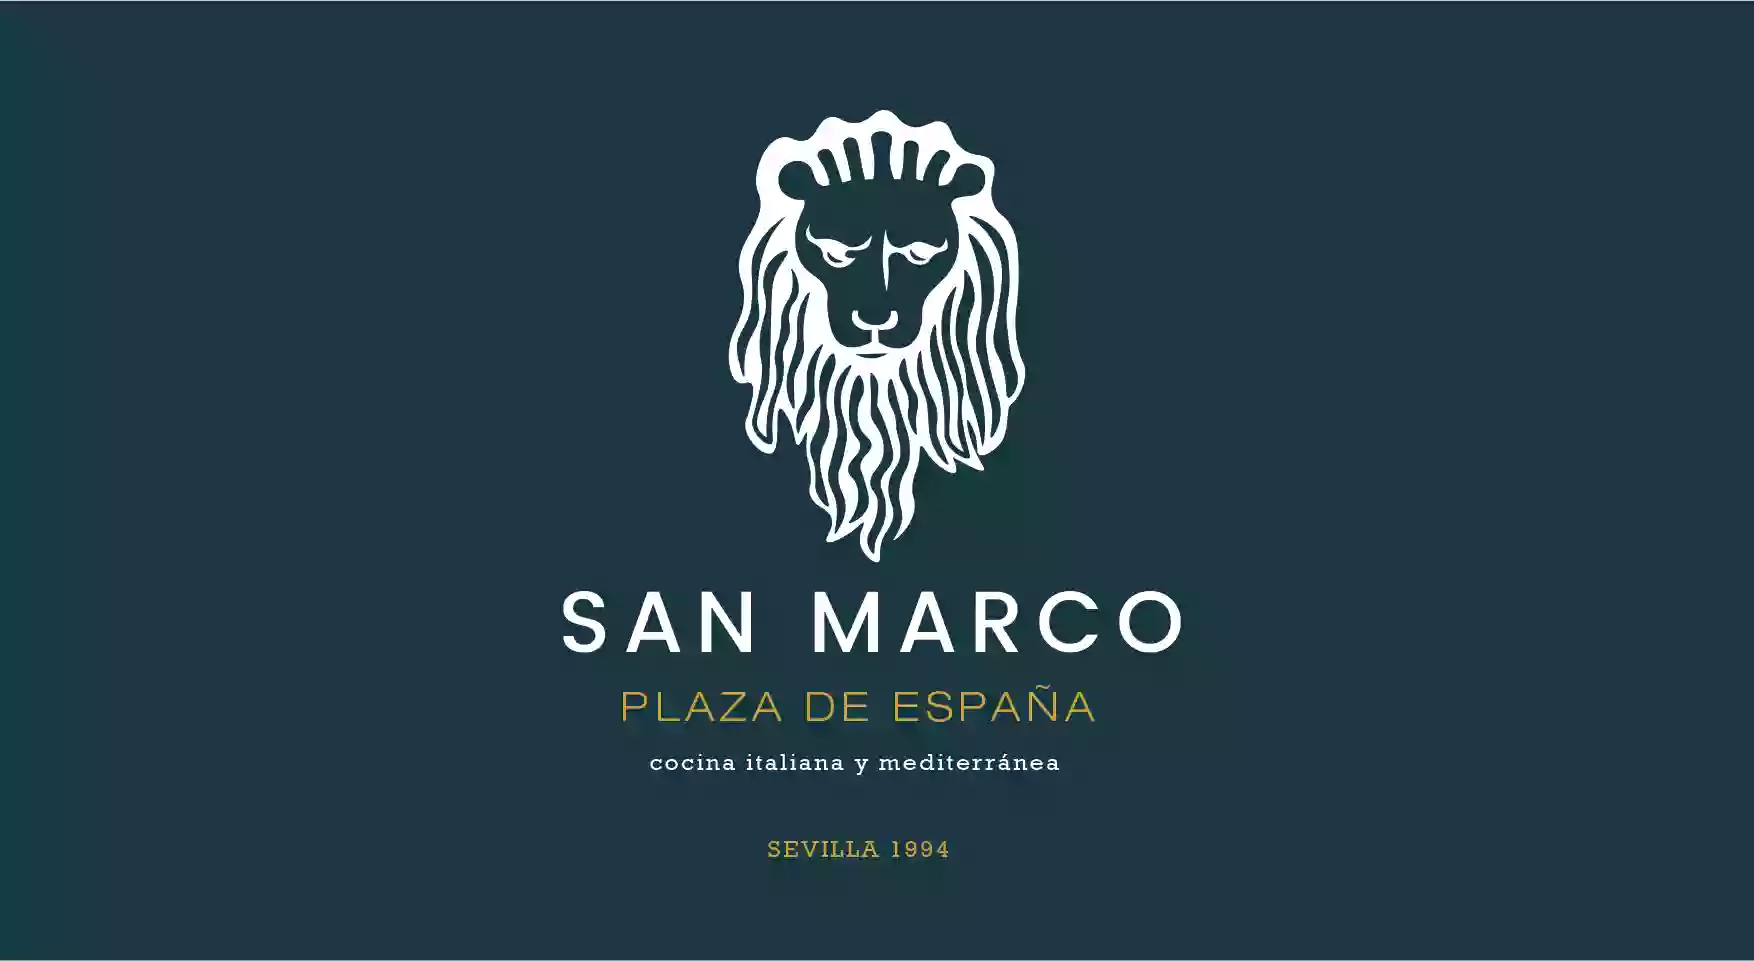 San Marco Plaza de España